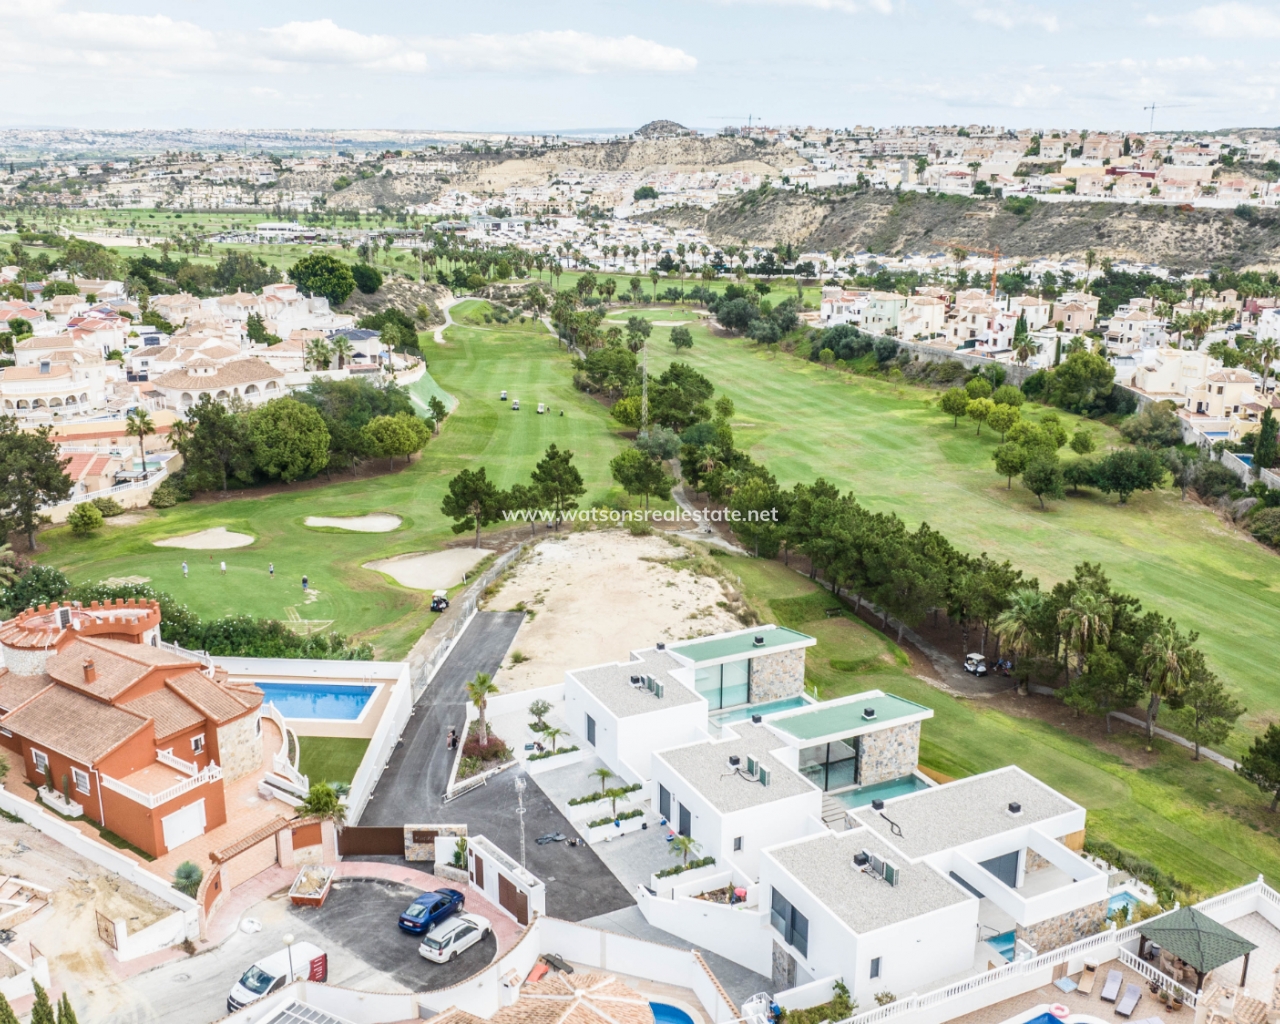 Properties For Sale in Ciudad Quesada, Spain